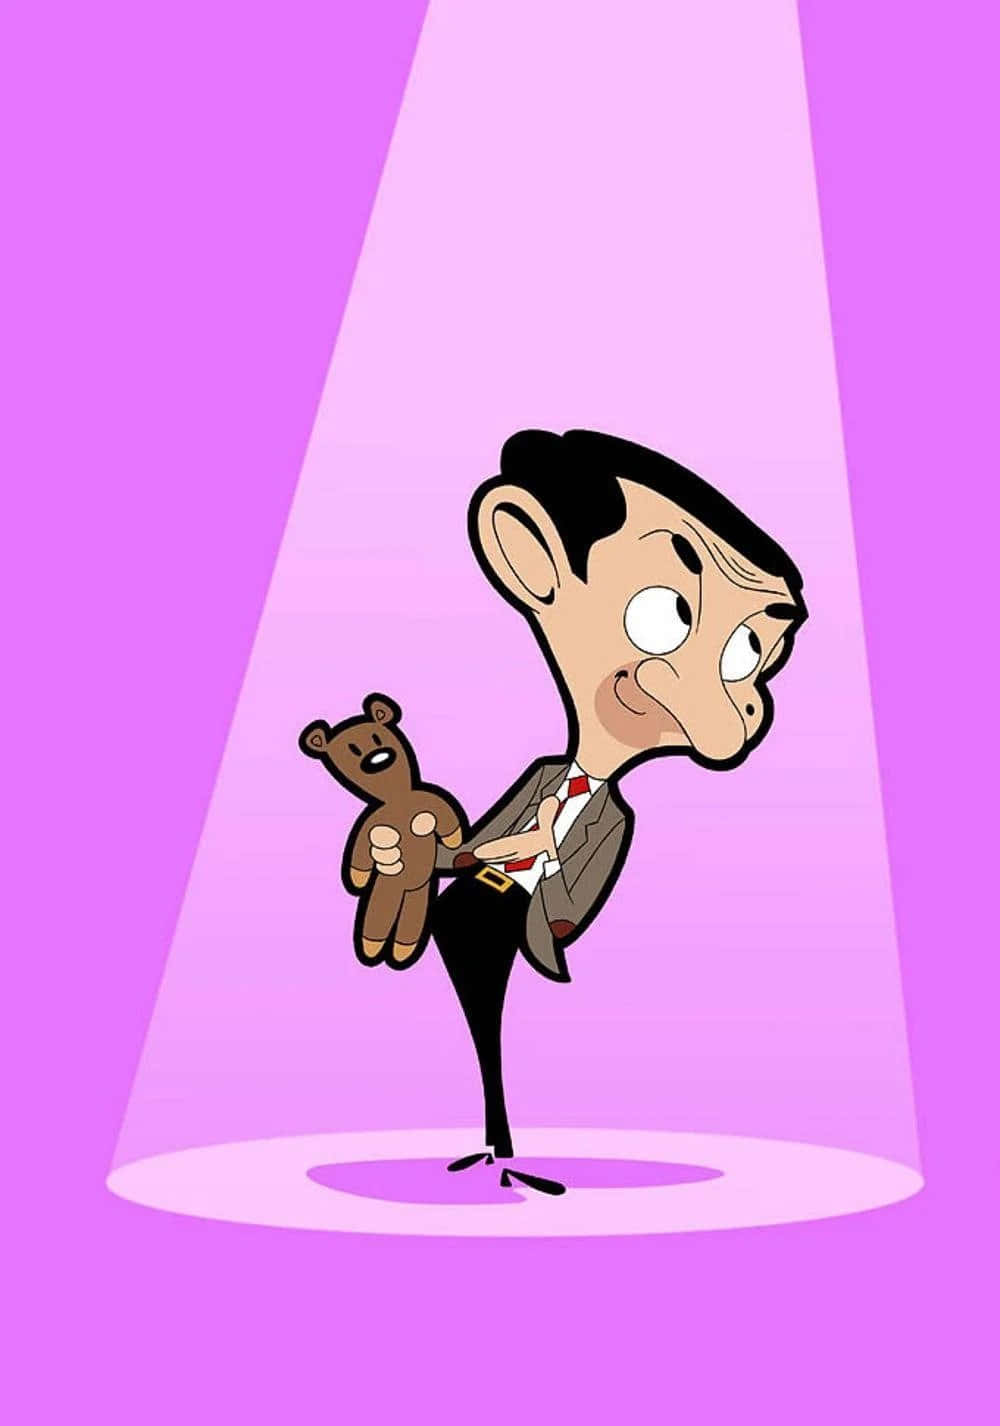 Mr. Bean's Hilarious Antics Caught on Camera